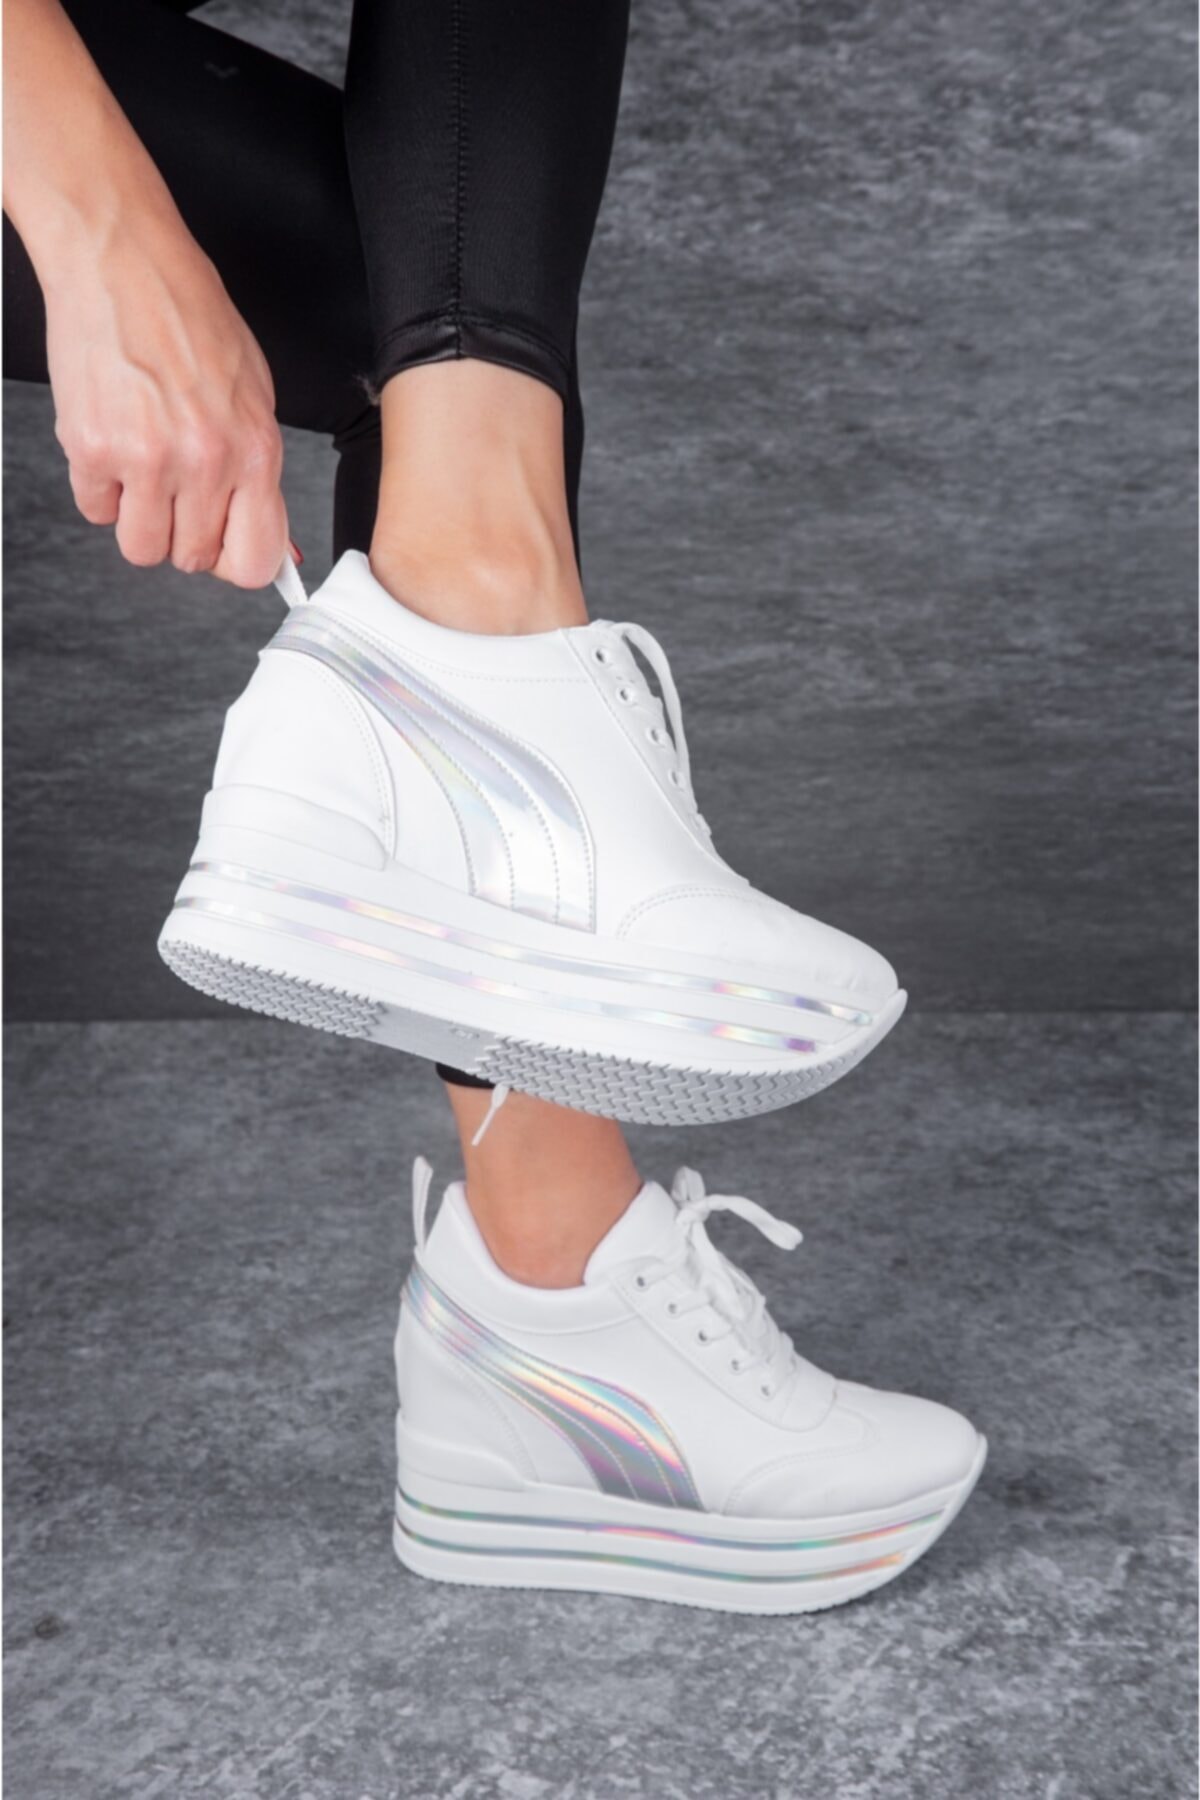 Tarz Topuklar Kadın Bağcıklı Gizli Dolgu Topuklu Beyaz Spor Ayakkabı